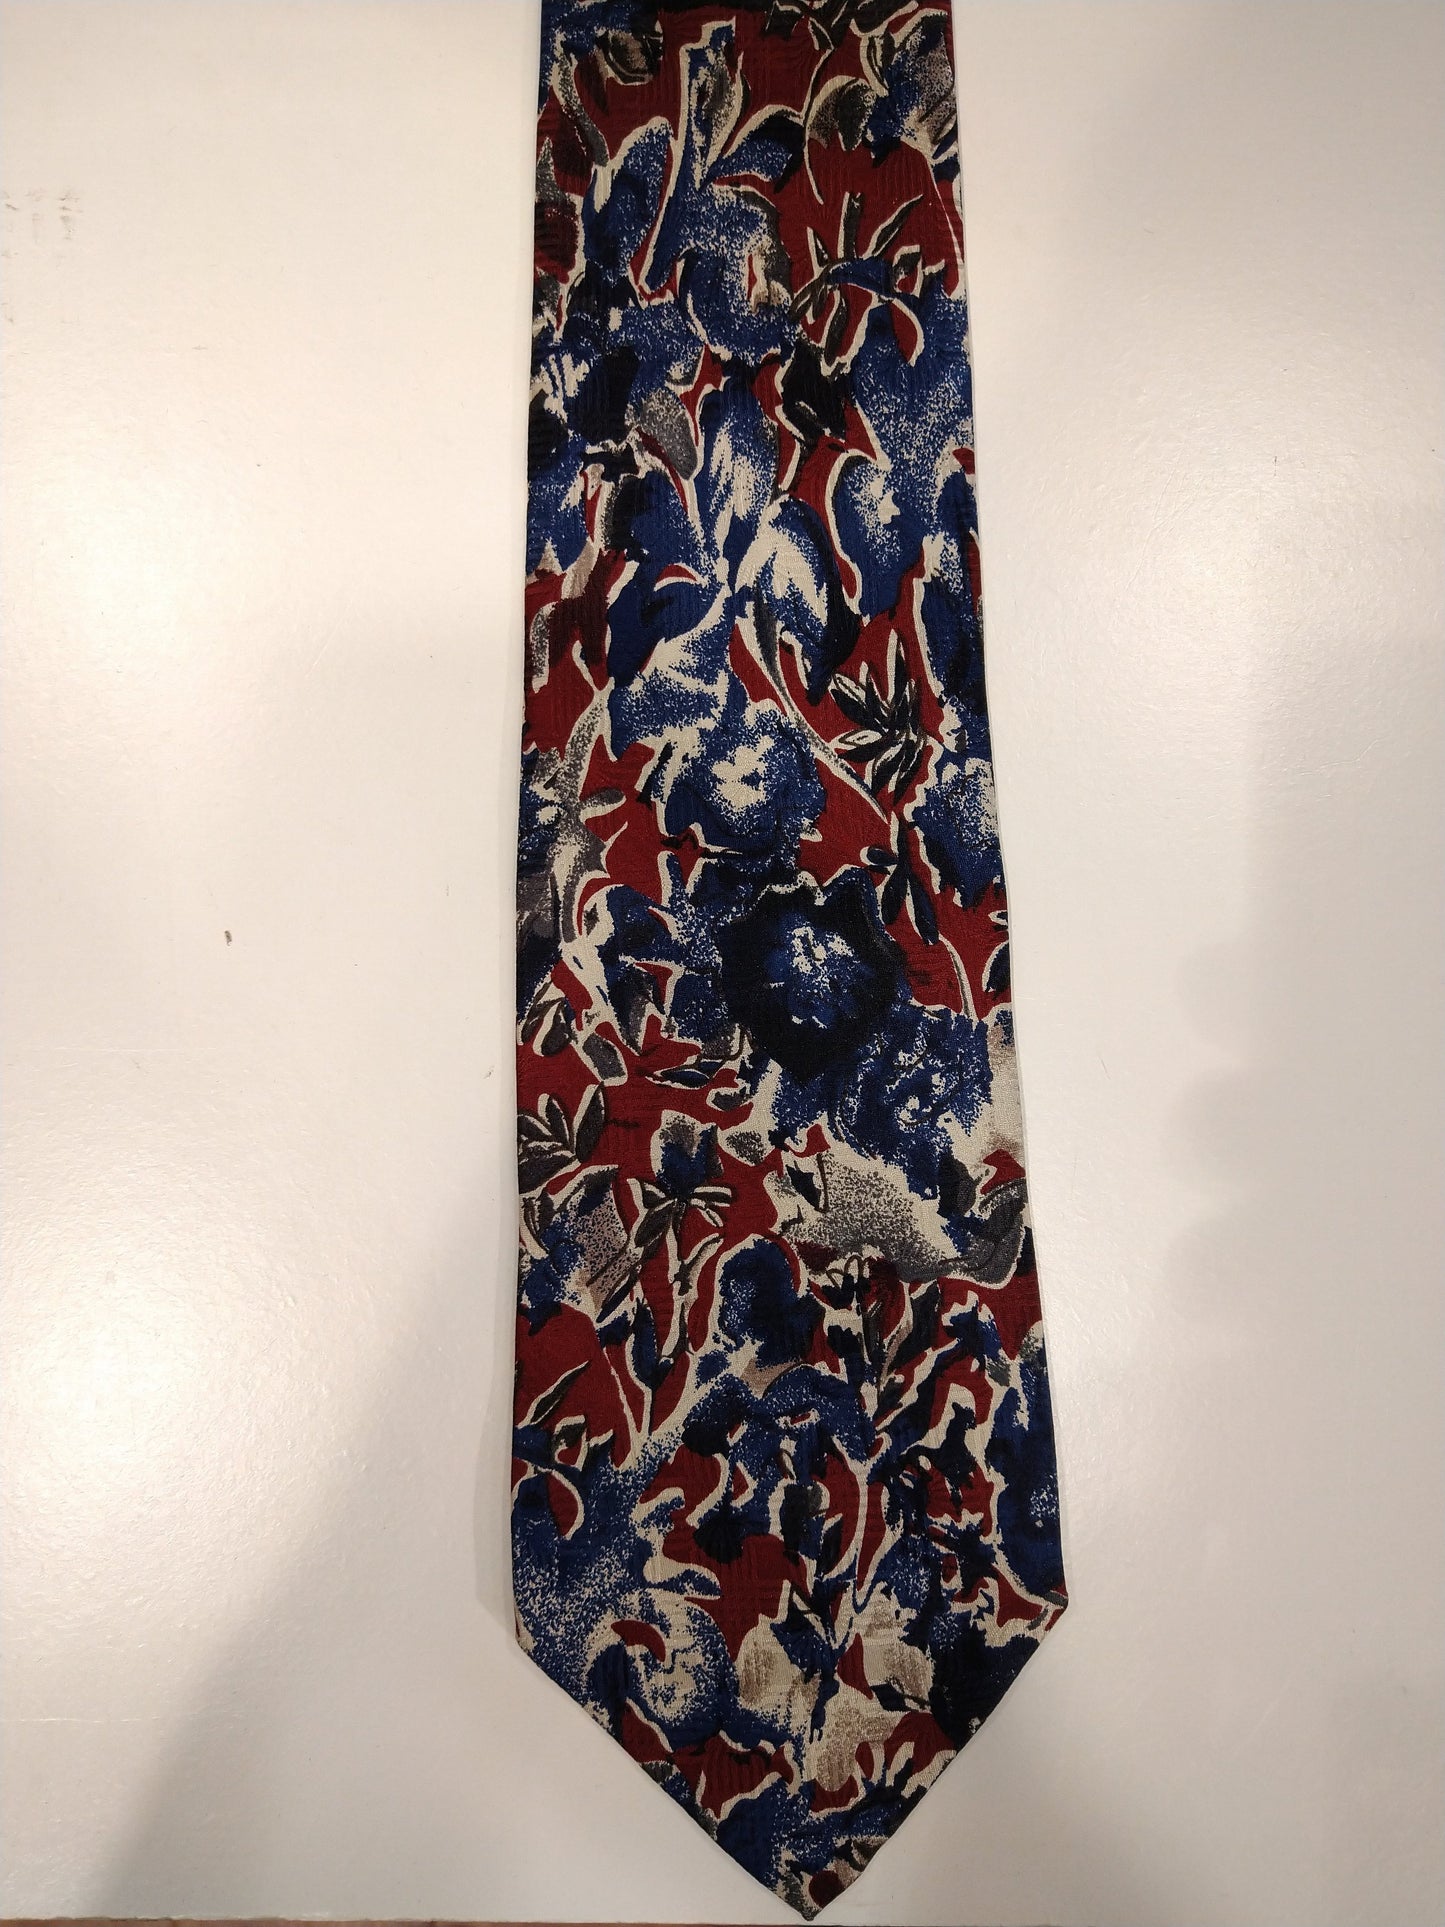 Cravate de bonbons de soie vintage. Motif rouge bleu.